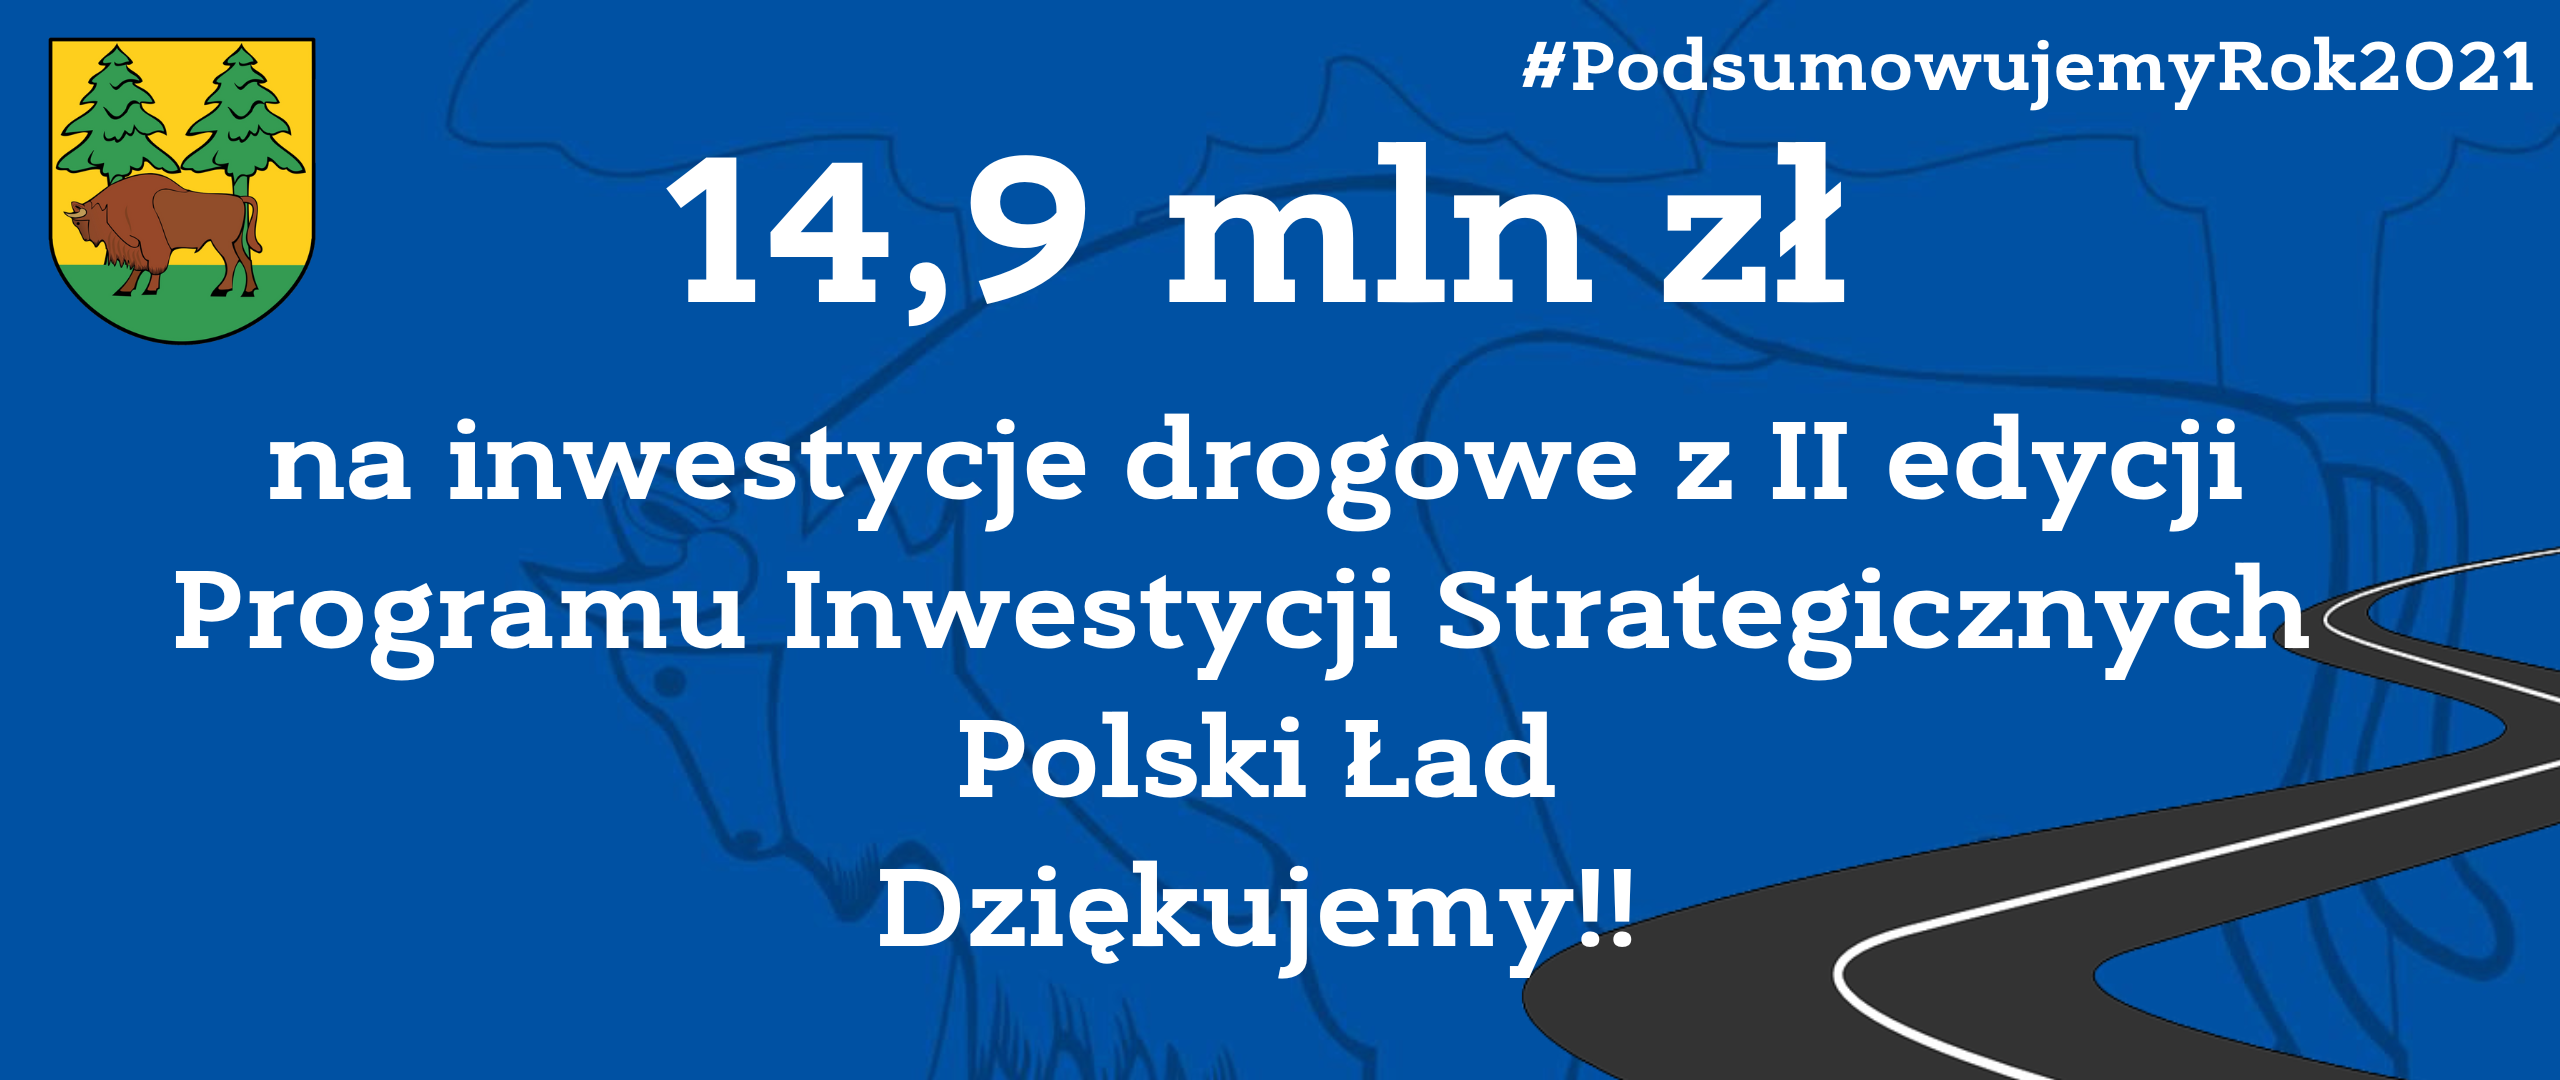 Na niebieskim tle napis: 14,9 mln zł na inwestycje z II edycji Programu Inwestycji Strategicznych Polski Ład. Dziękujemy. U góry strony herb powiatu - na żółto-zielonym tle żubr i dwa świerki